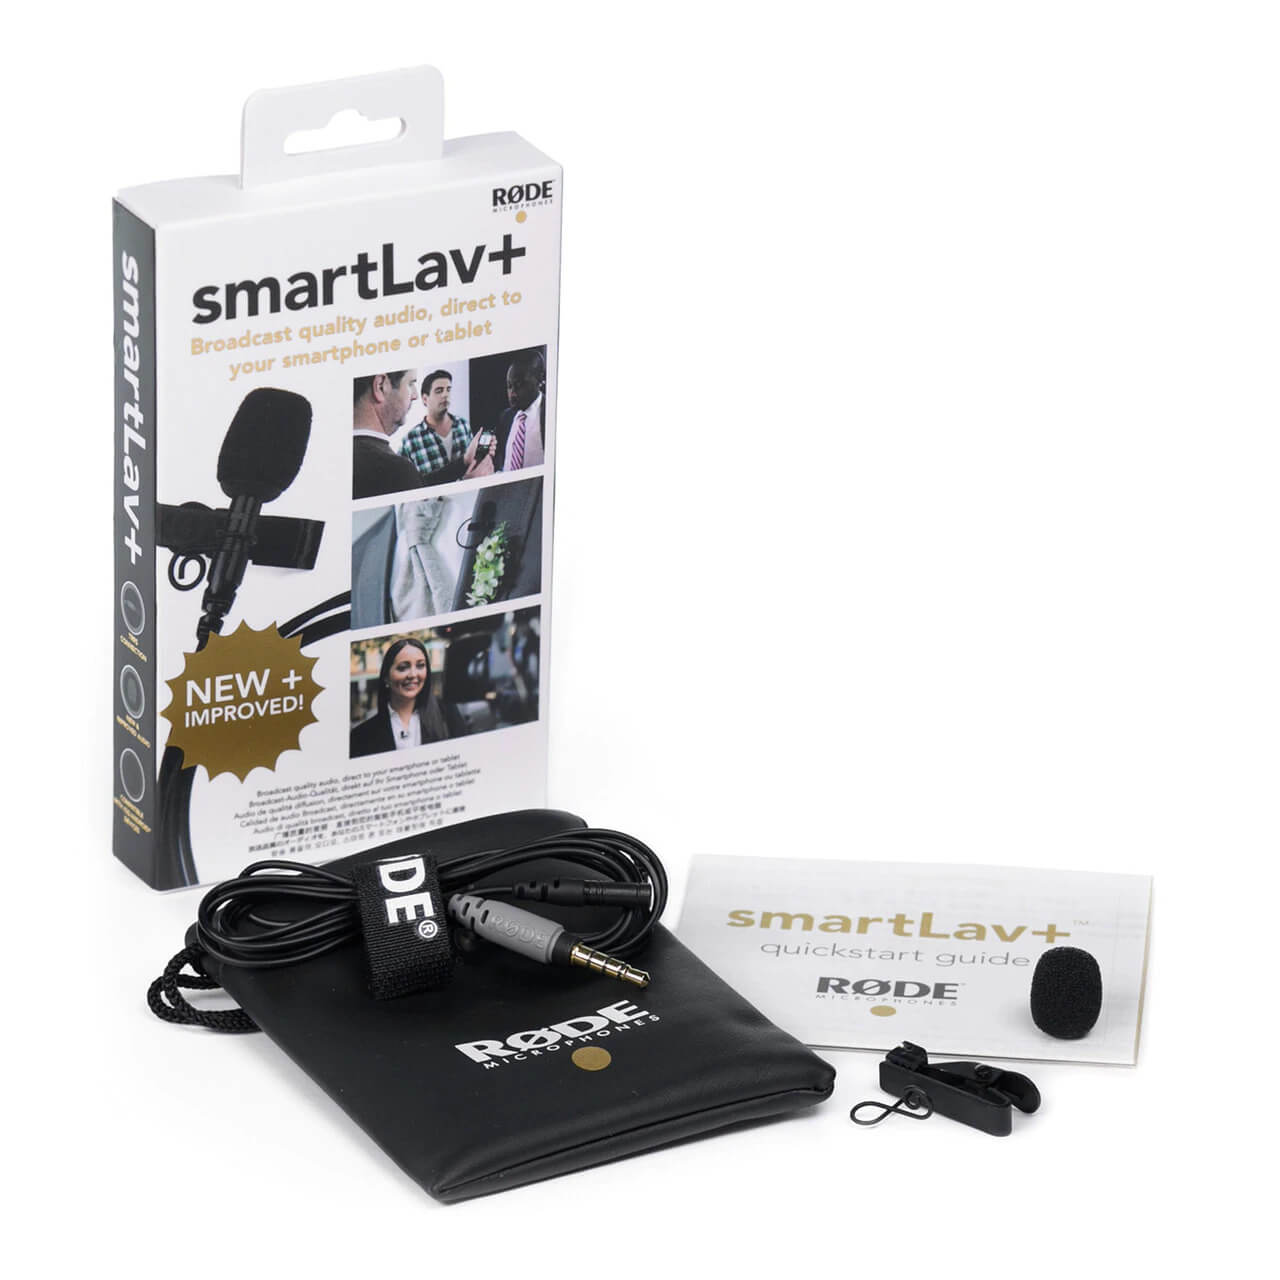 smartLav+ packaging